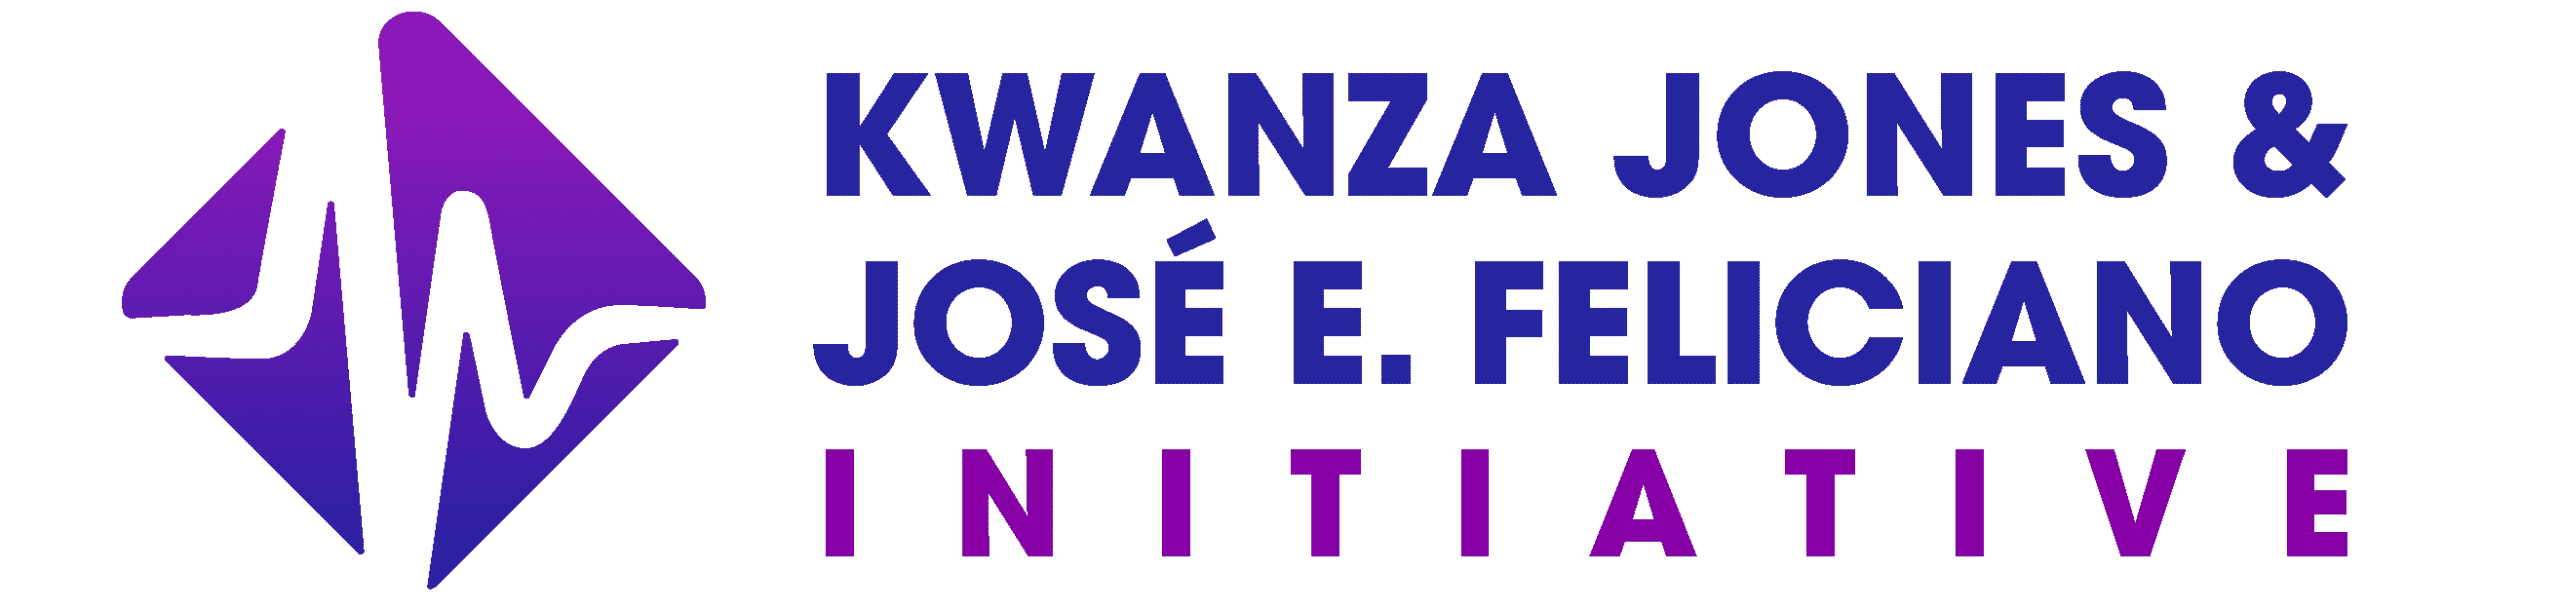 Kwanza Jones & José Feliciano Initiative